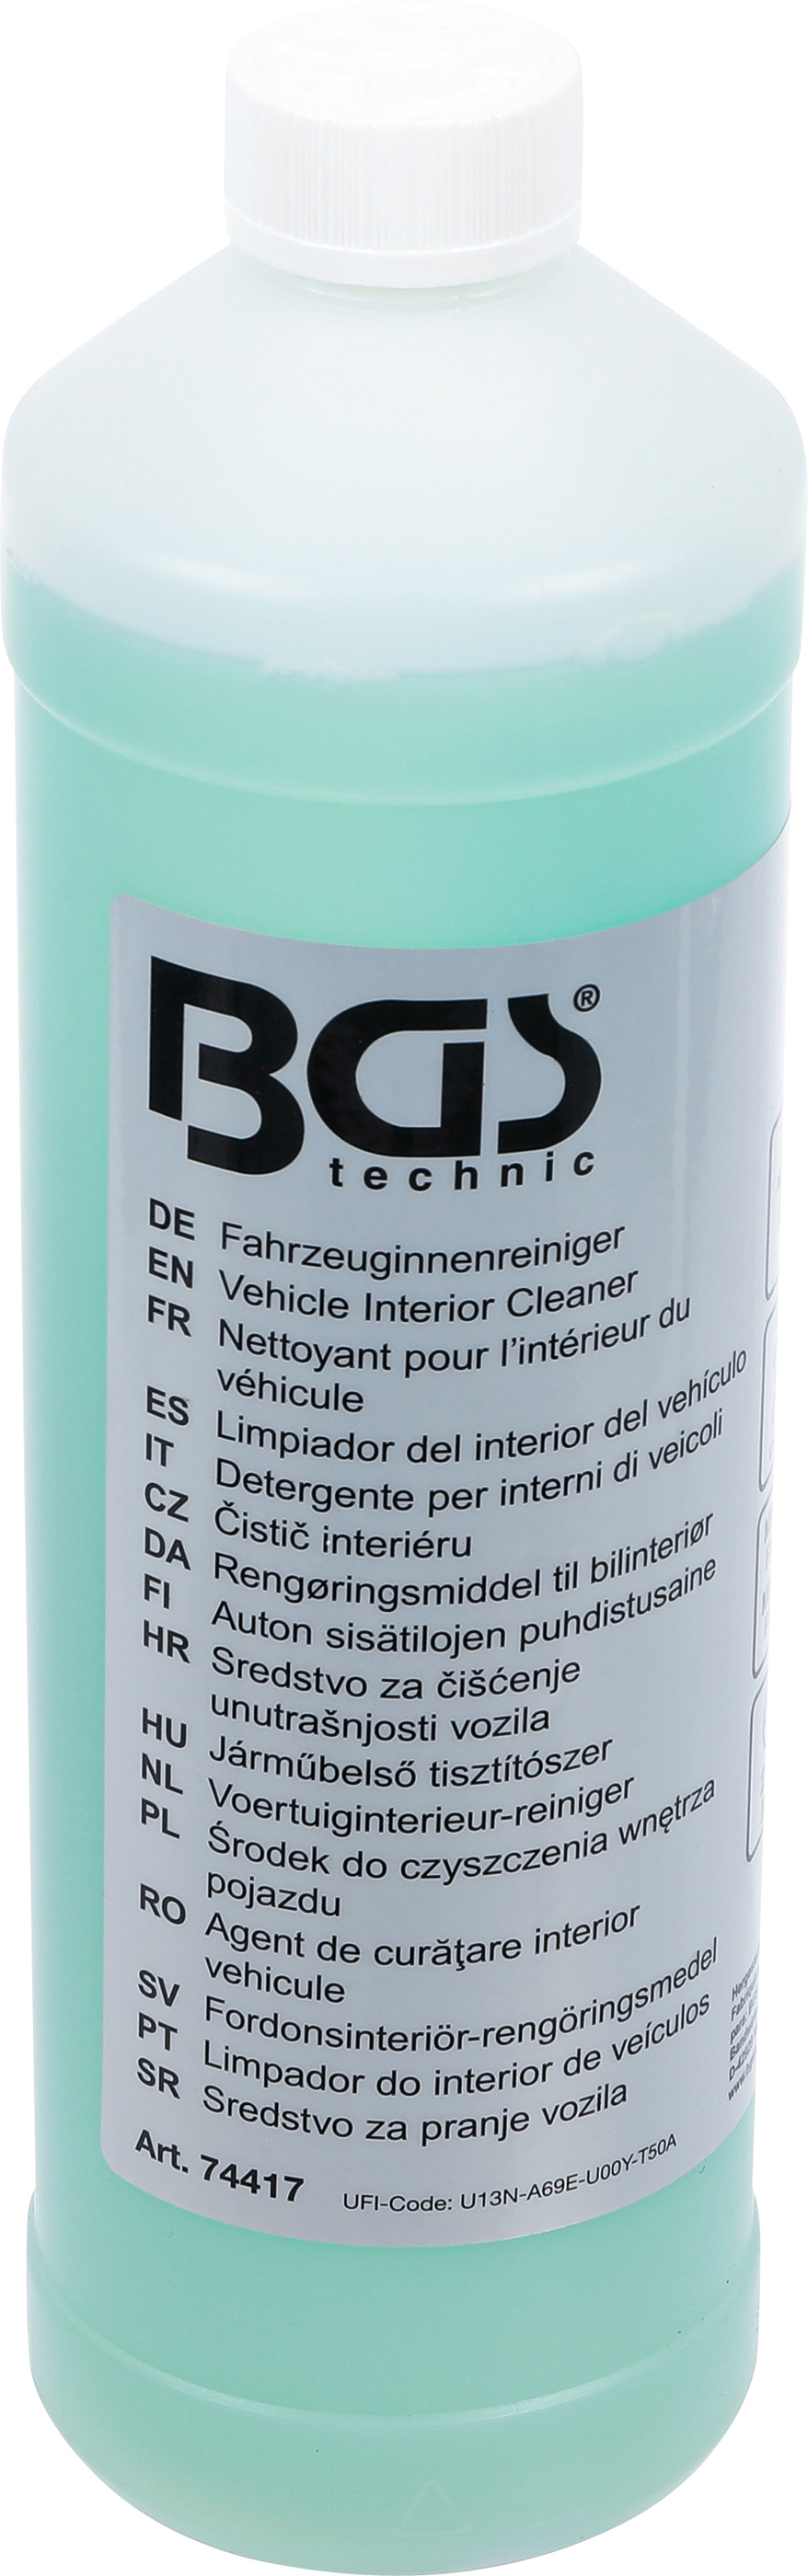 BGS Fahrzeuginnenreiniger | 1000 ml